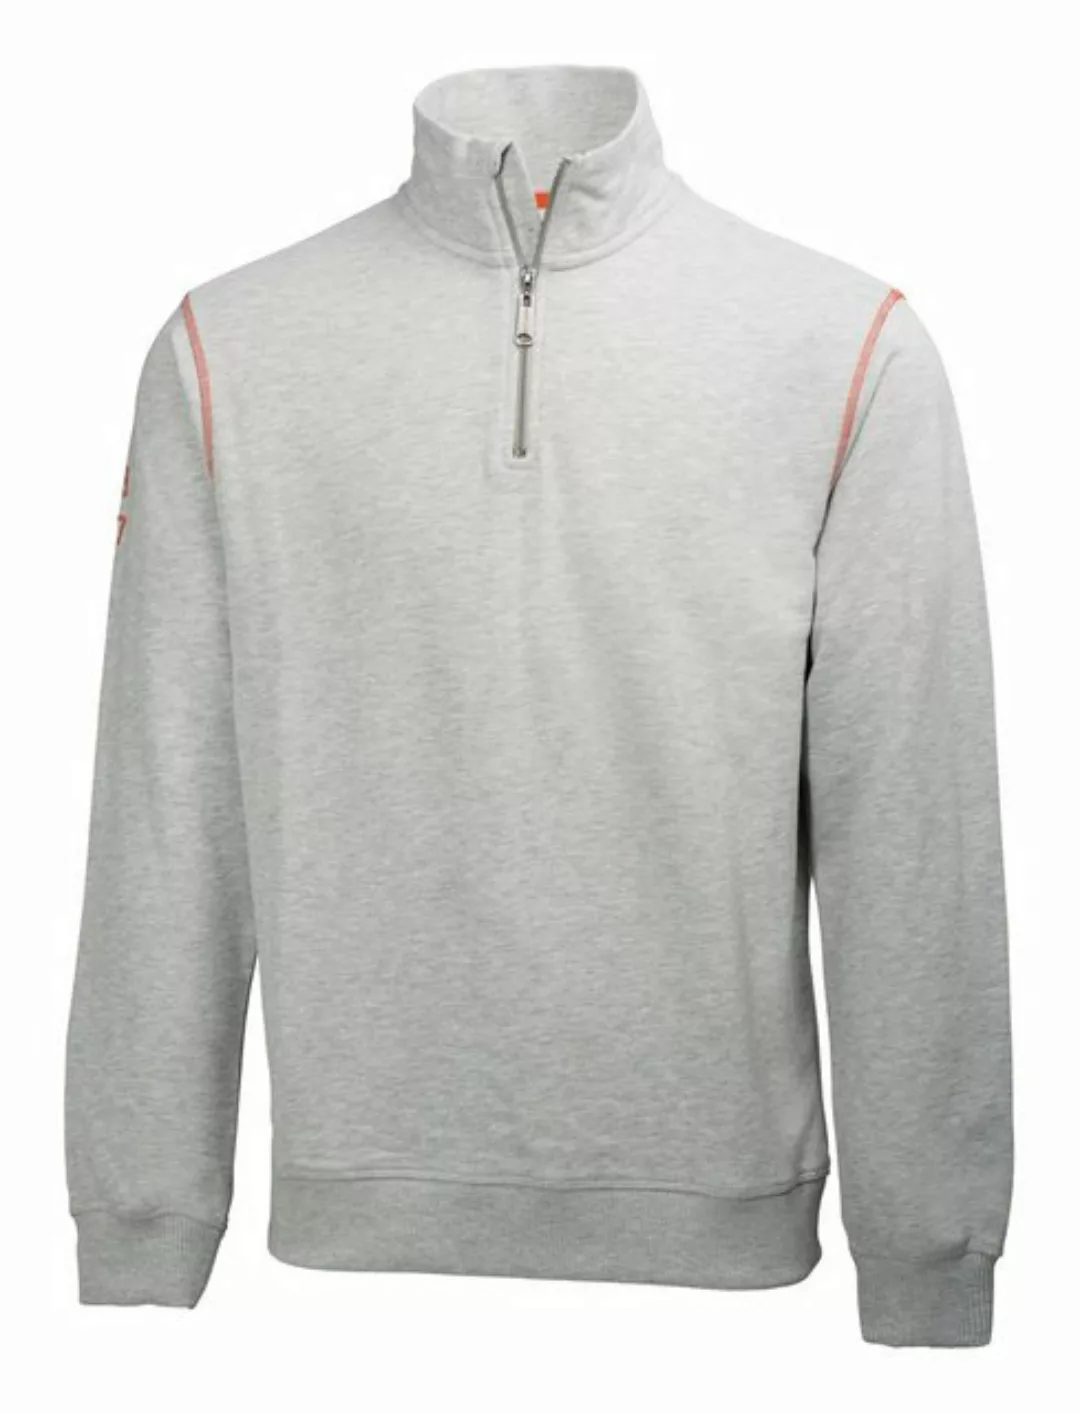 Helly Hansen workwear Sweatshirt Sweater Oxford, Größe 2XL, grau-melliert günstig online kaufen